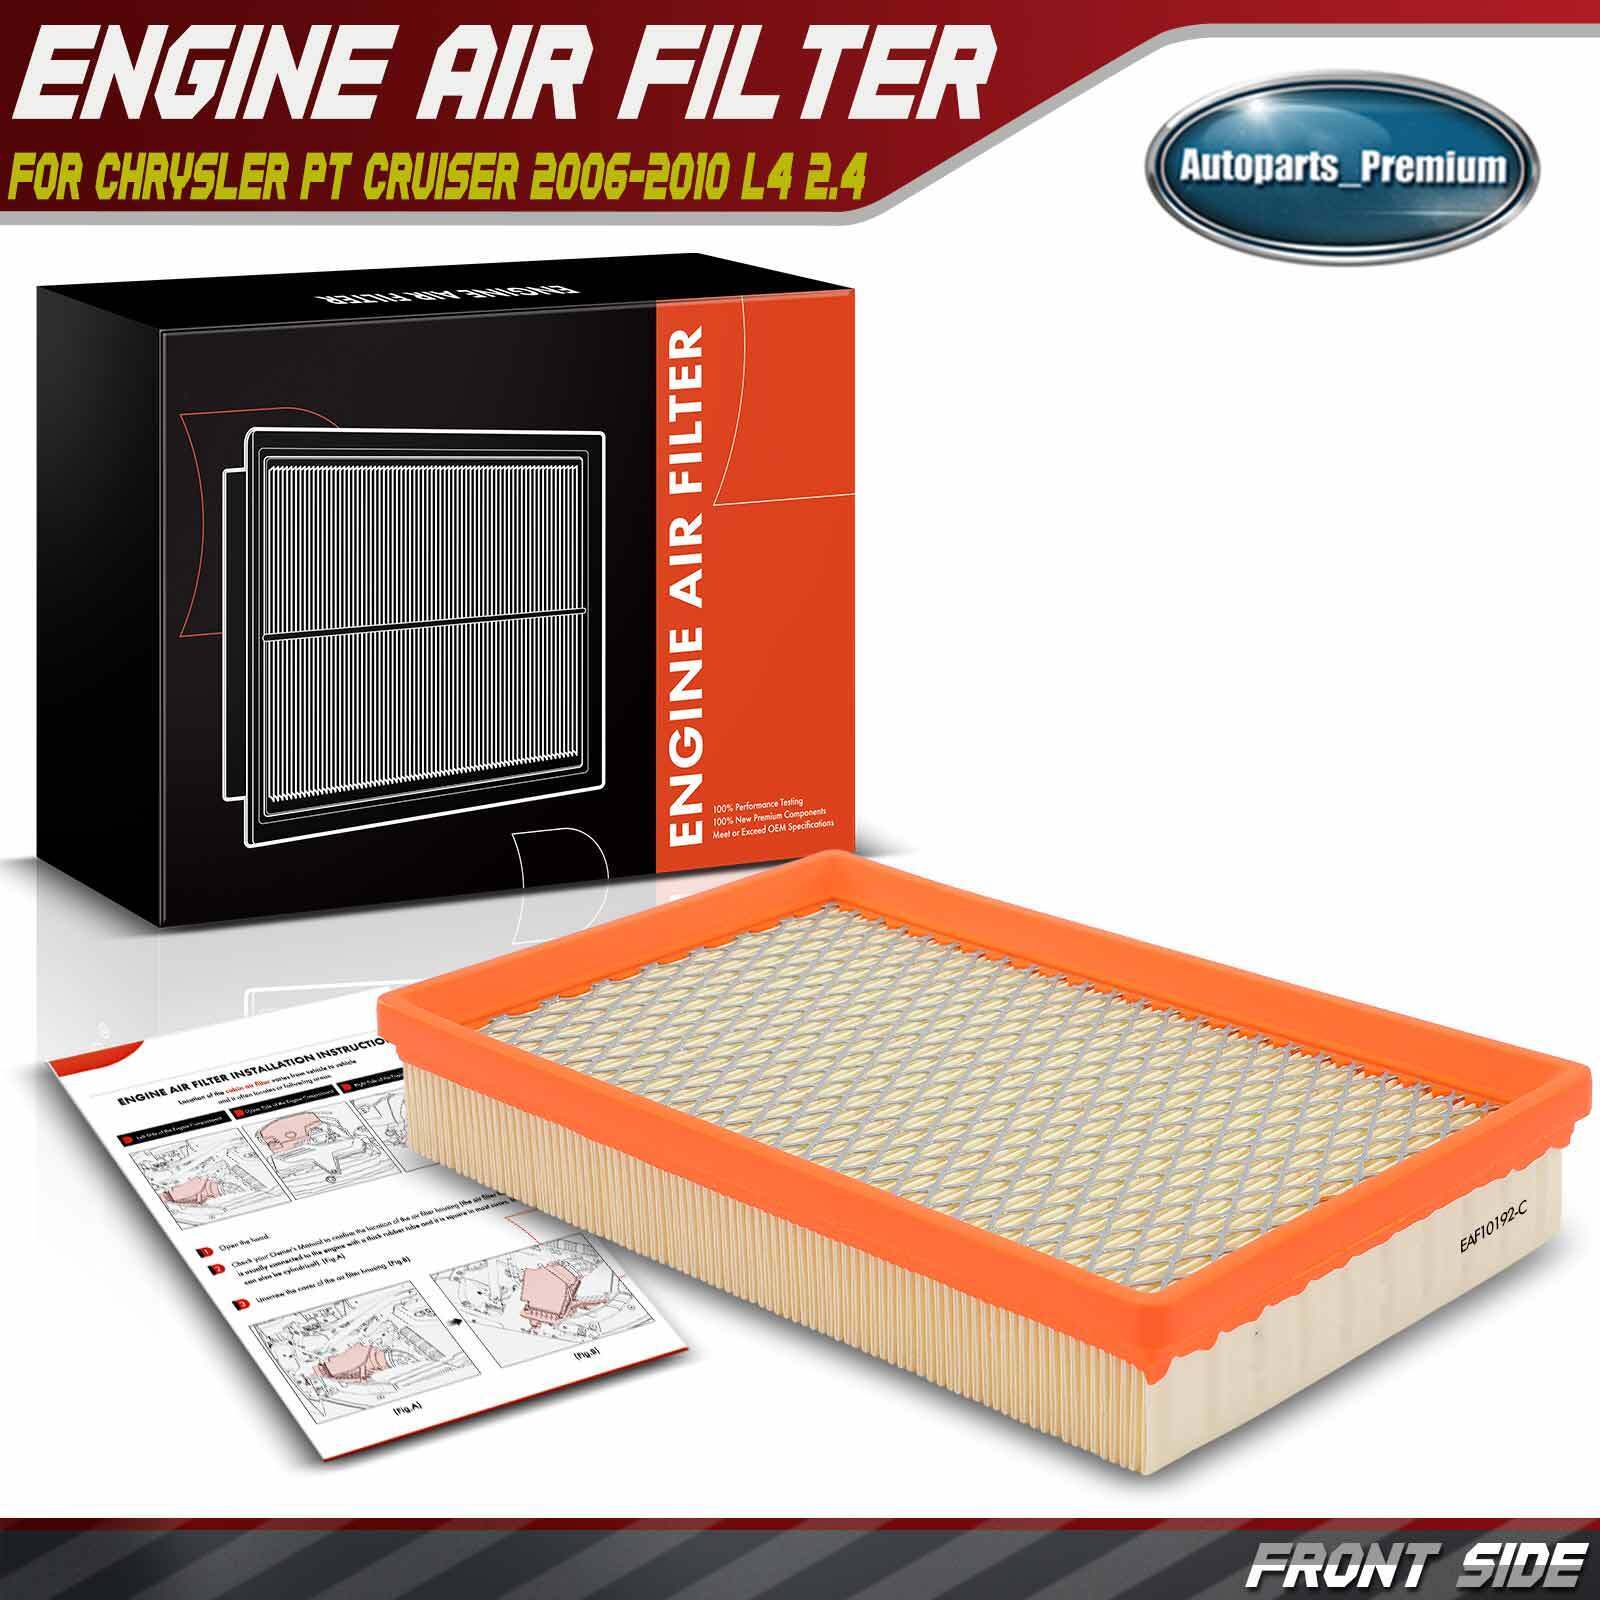 New Engine Air Filter for Chrysler PT Cruiser 2006 2007 2008 2009 2010 L4 2.4